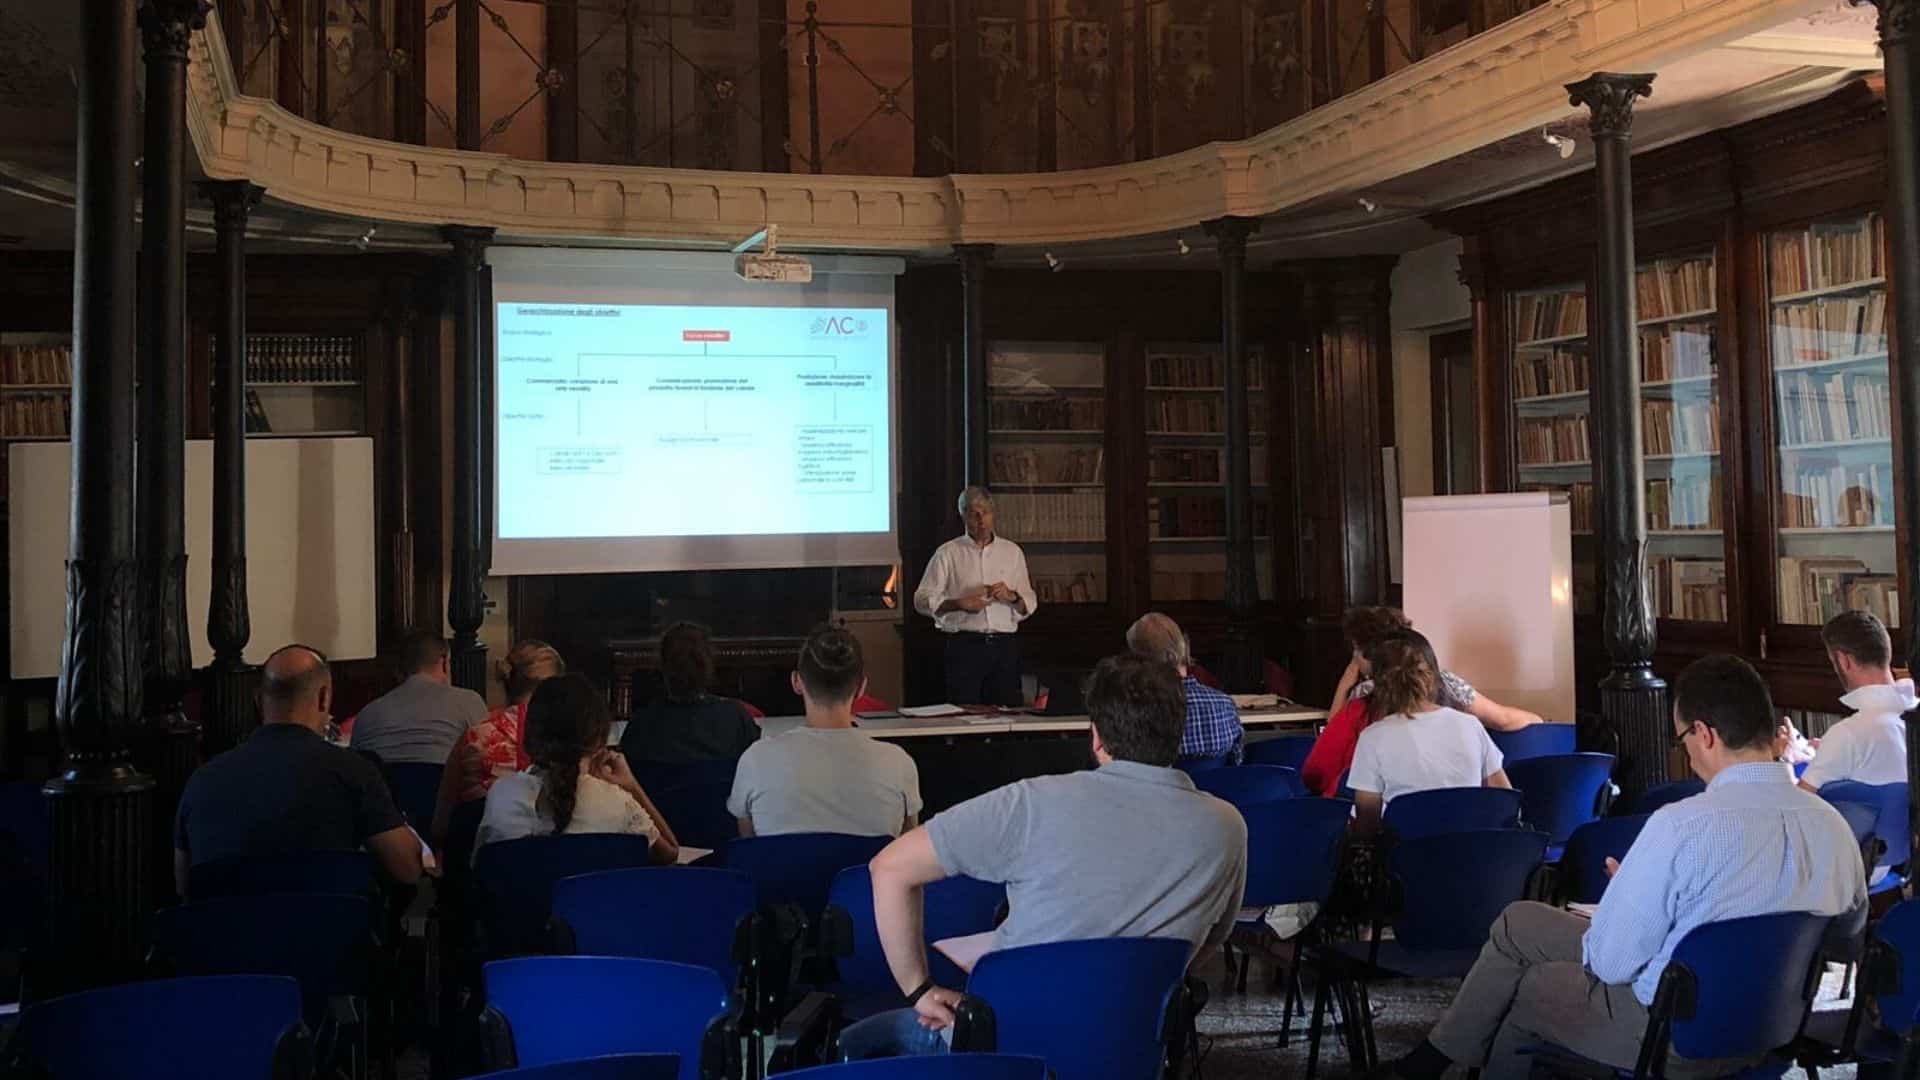 La lezione formativa tenuta presso la MIB Trieste School on Management a Portogruaro.